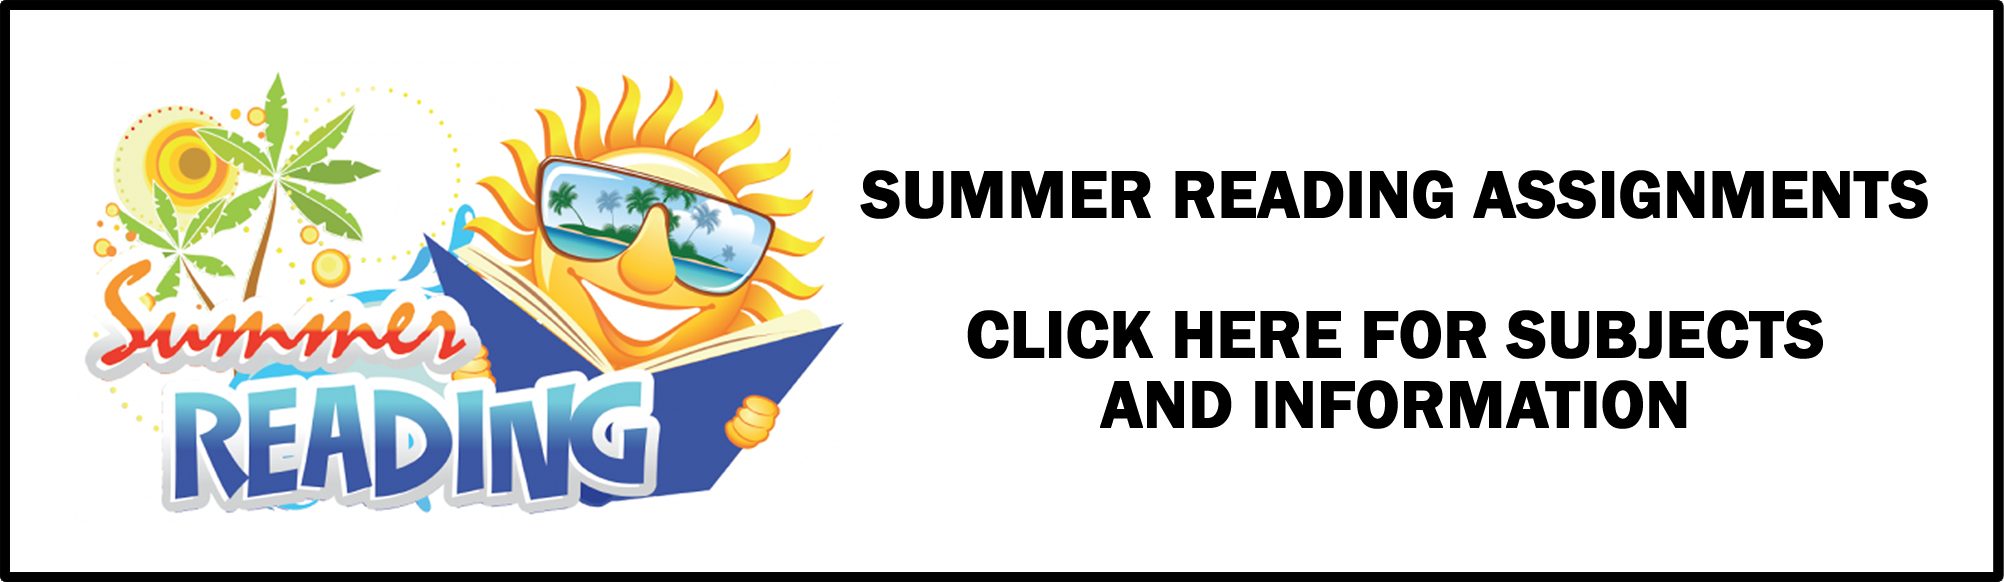 Summer Reading Program Information